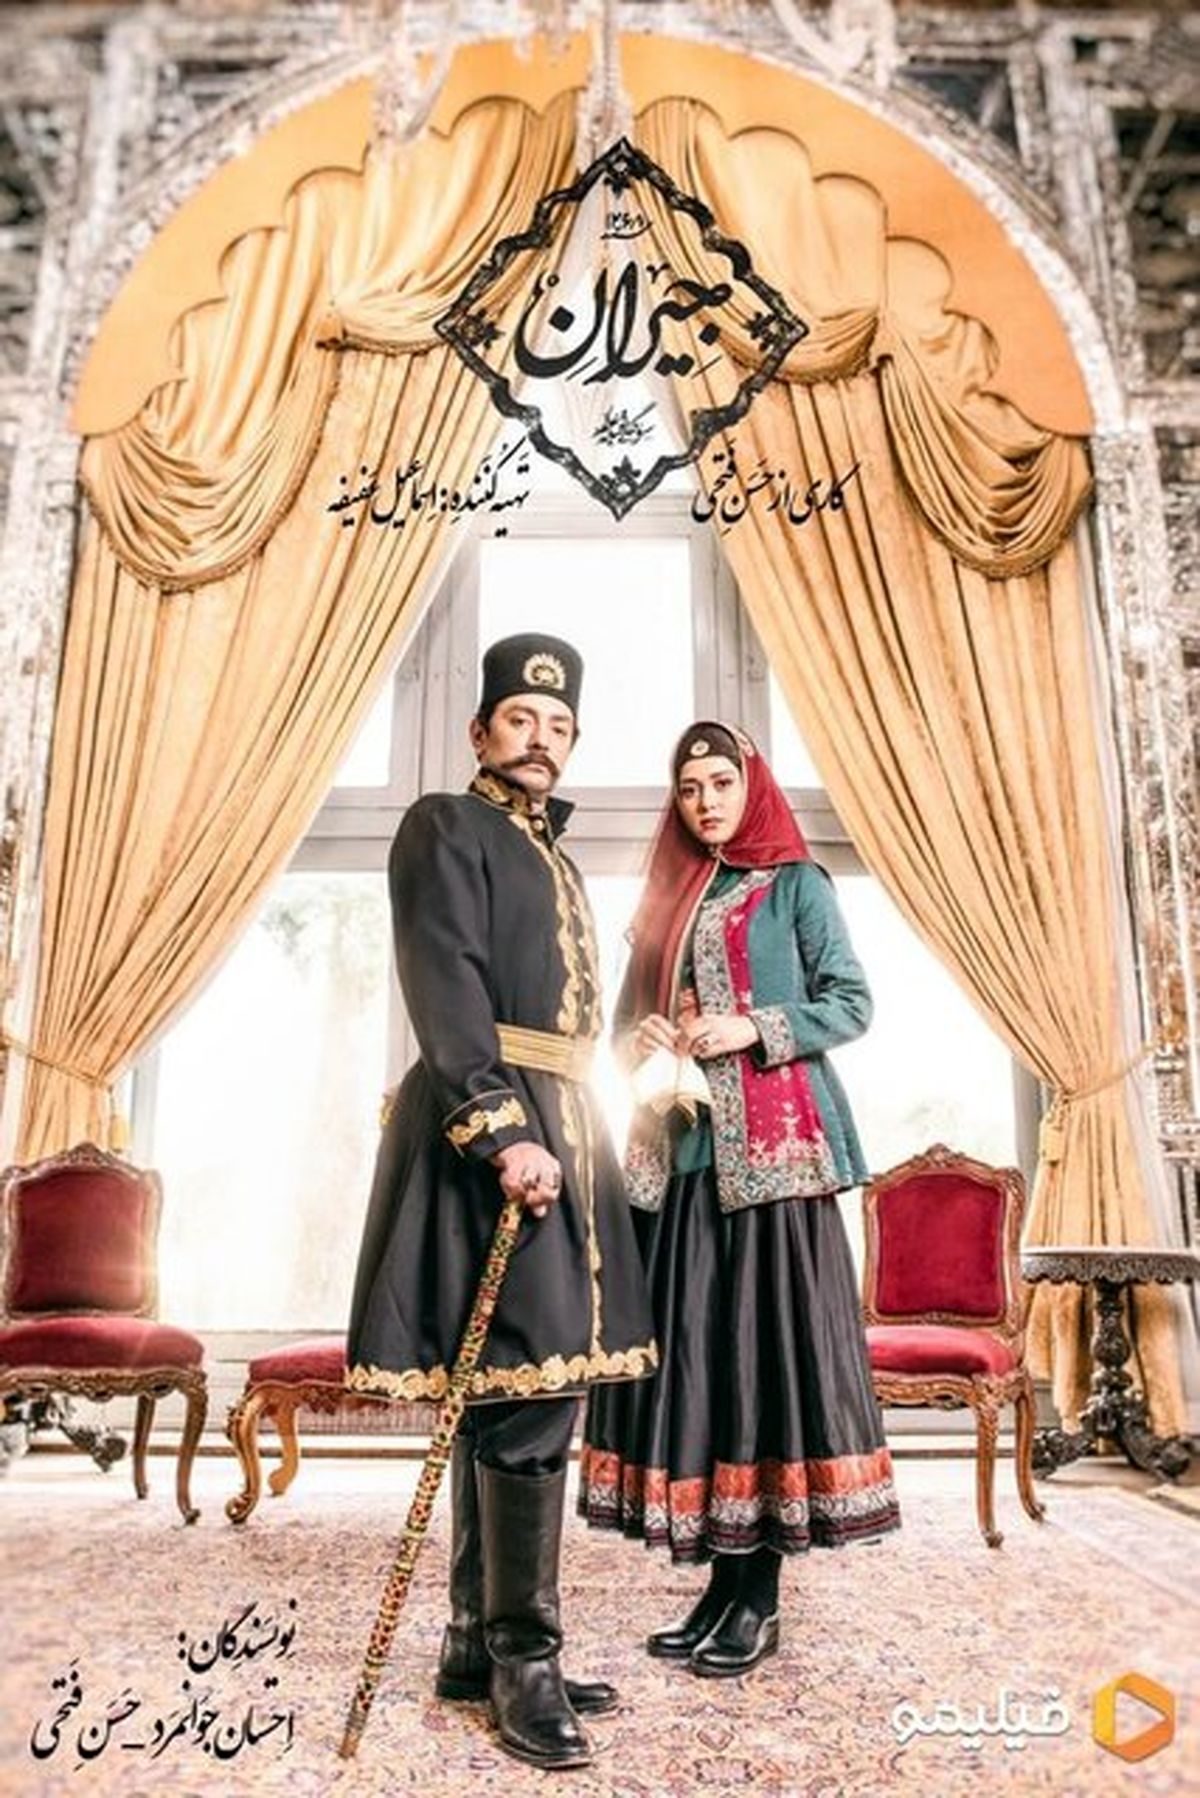 عکس بهرام رادان و پریناز ایزدیار در سریال جیران به کارگردانی حسن فتحی